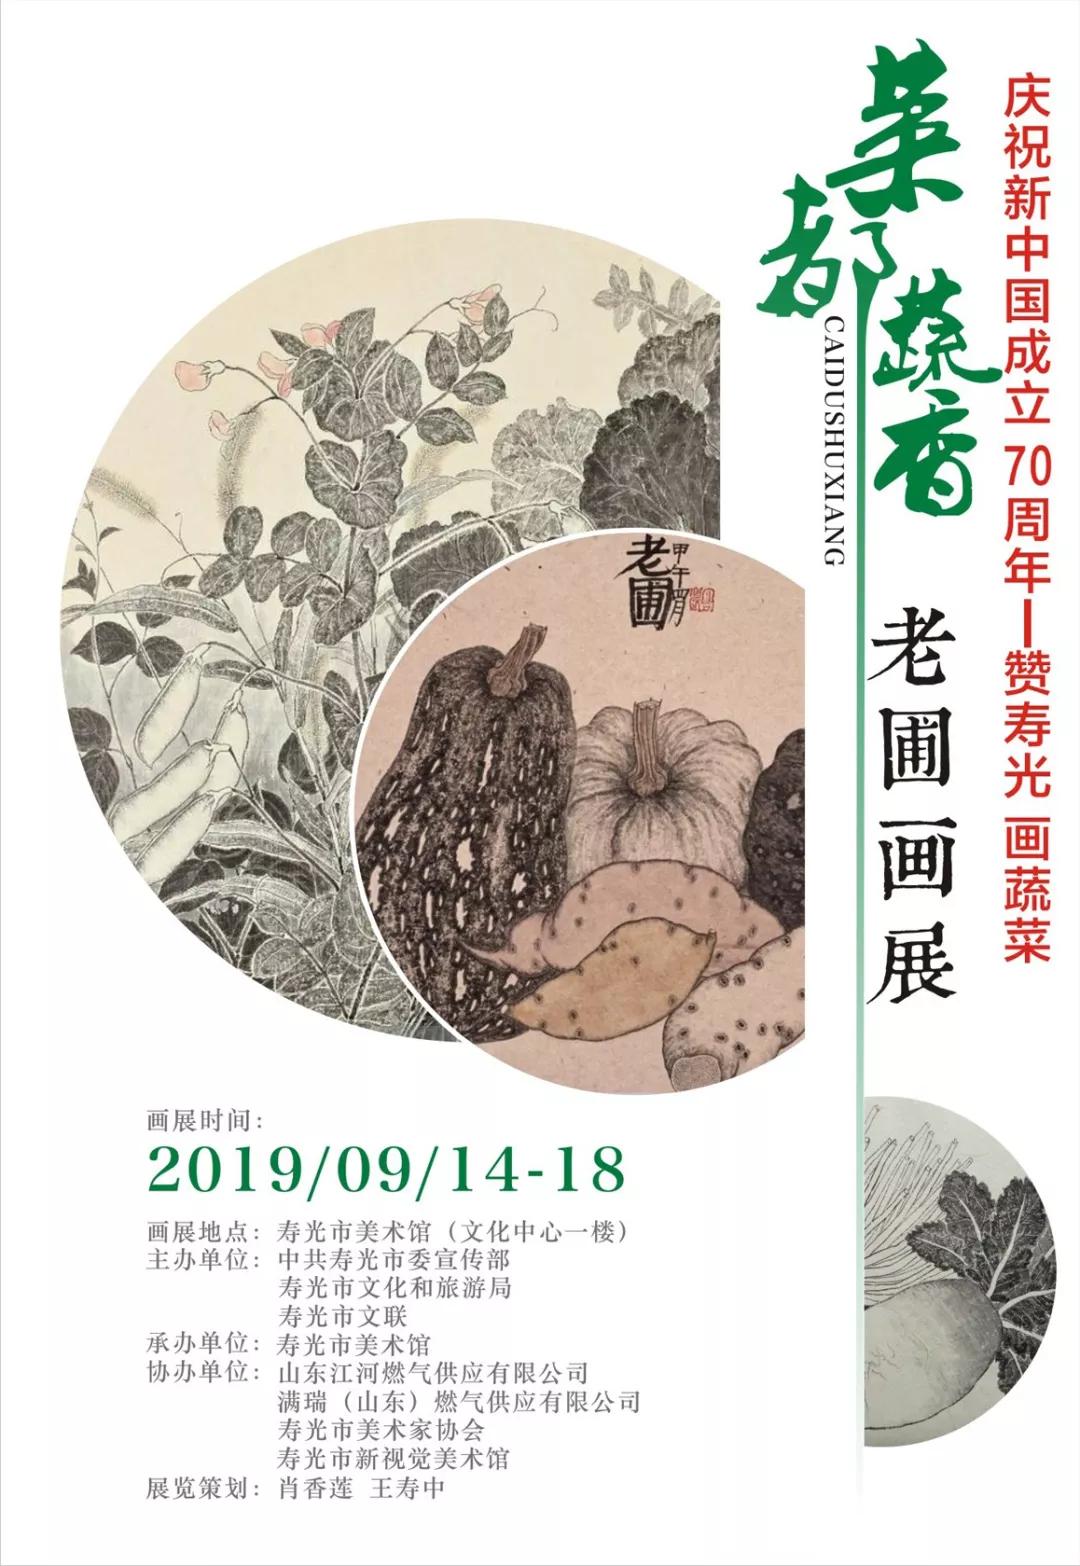 赞寿光 画蔬菜——《菜都蔬香》老圃画展将于9月14日在寿光开幕